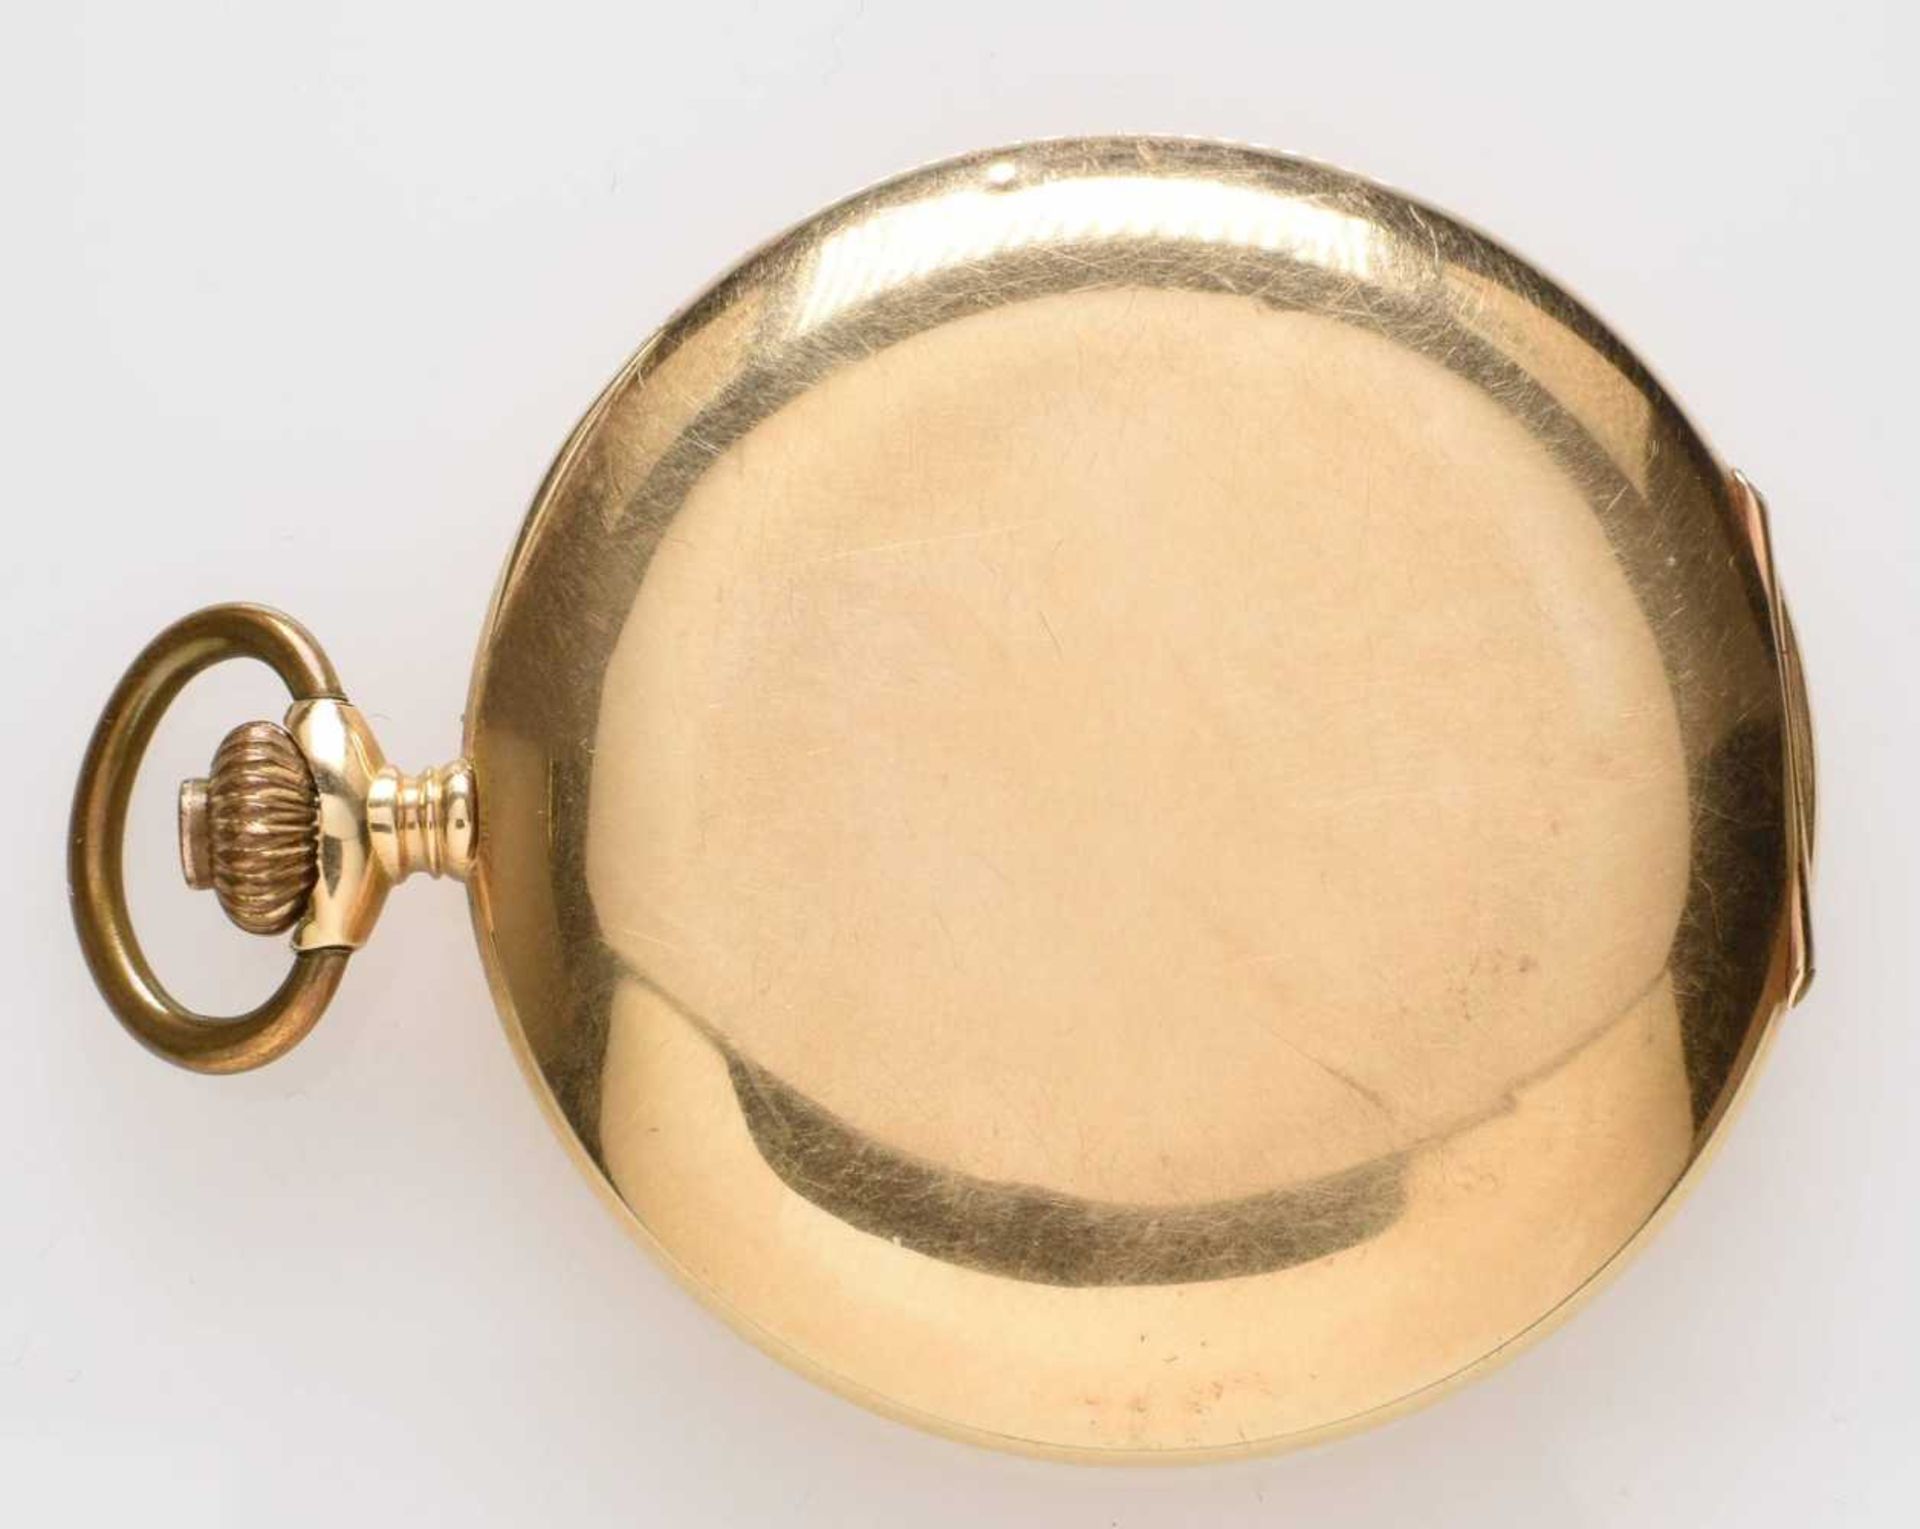 Savonette-Taschenuhr. Ca. 52 mm, 0.585 Rotgold, Handaufzug. 16 Steine, Innendeckel graviert zum Jubi - Bild 2 aus 2